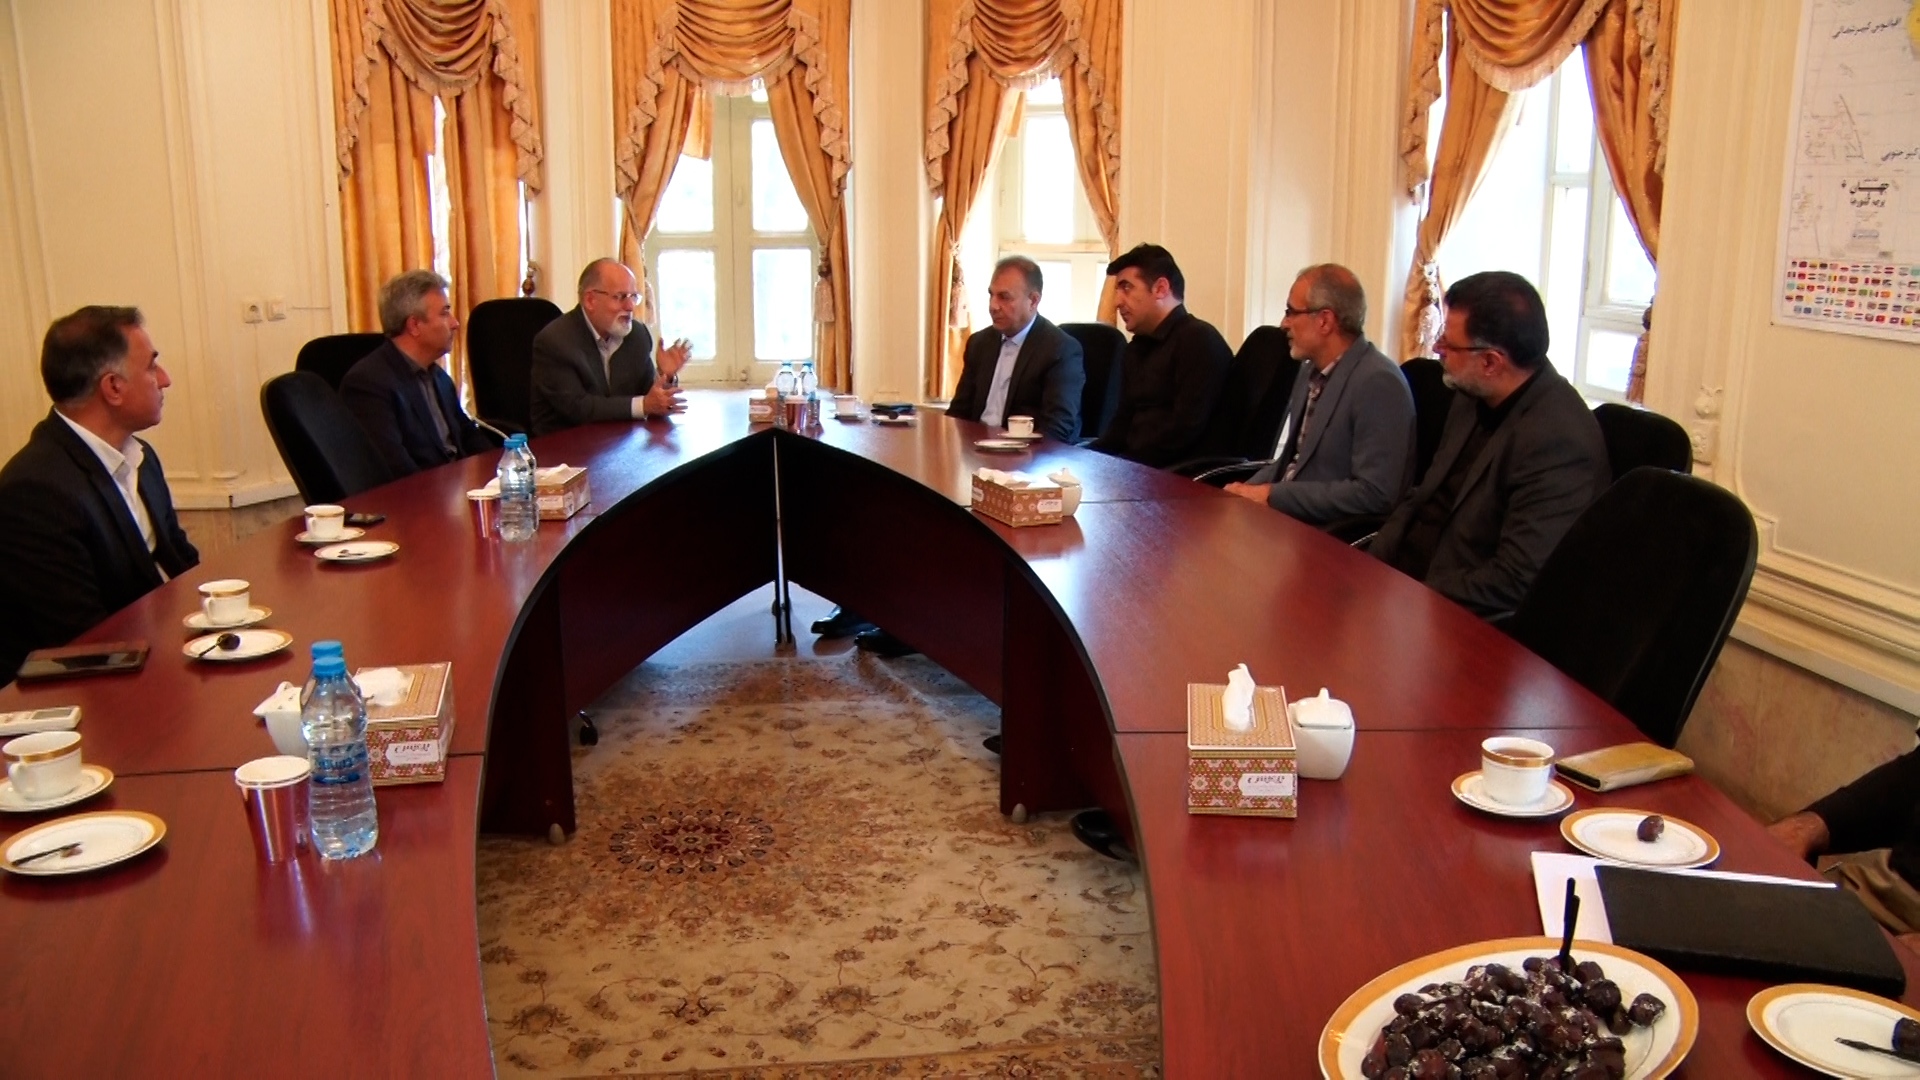 گرامیداشت یادوخاطره وزیر امور خارجه از شهدای سانحه بالگرد رئیس جمهور دراصفهان